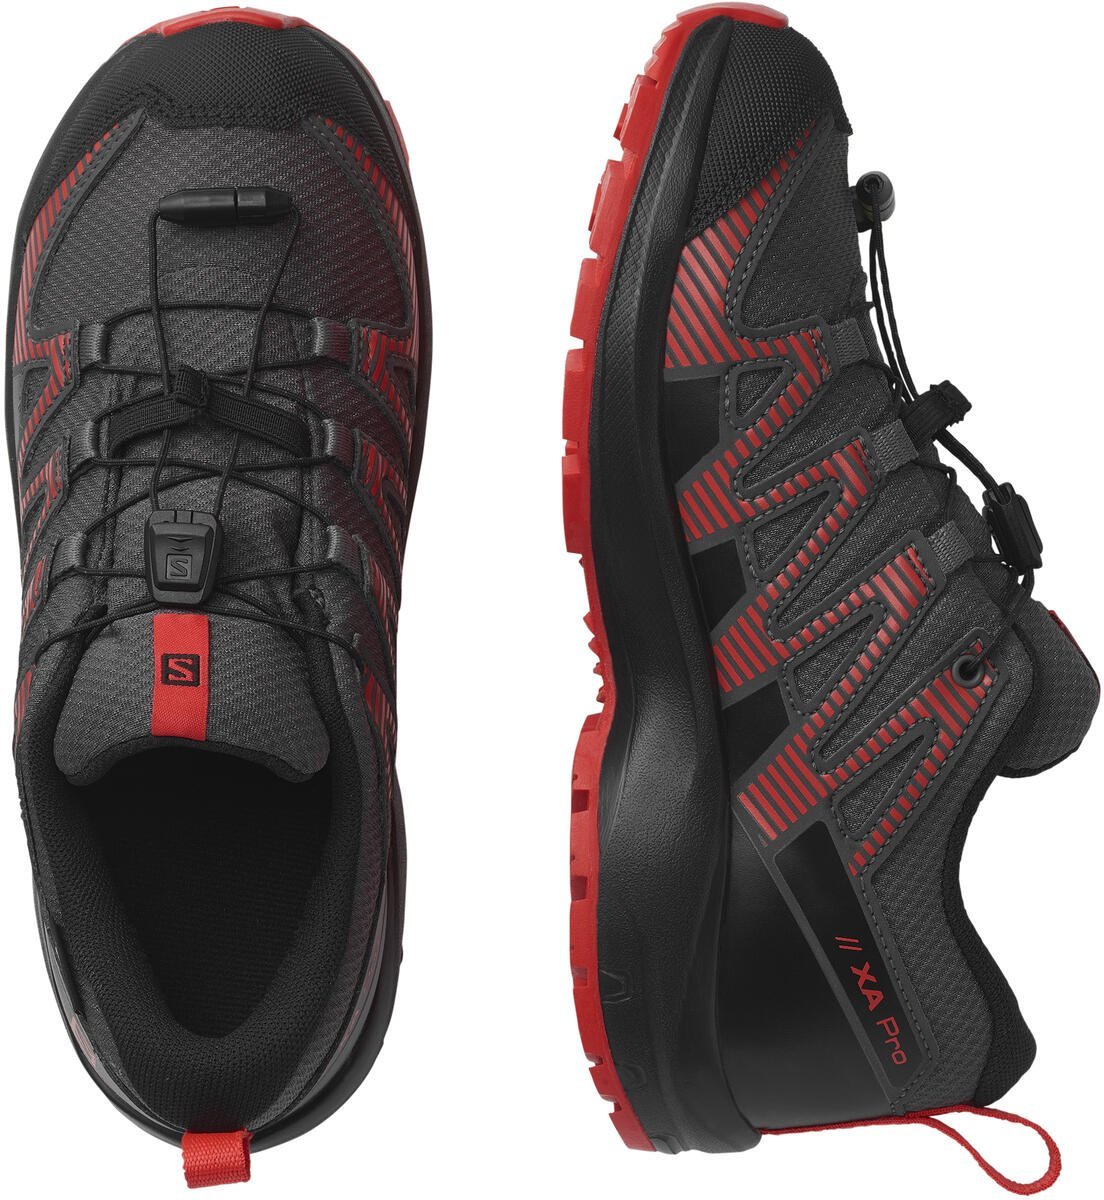 Topánky Salomon XA PRO V8 CSWP J - čierna/červená